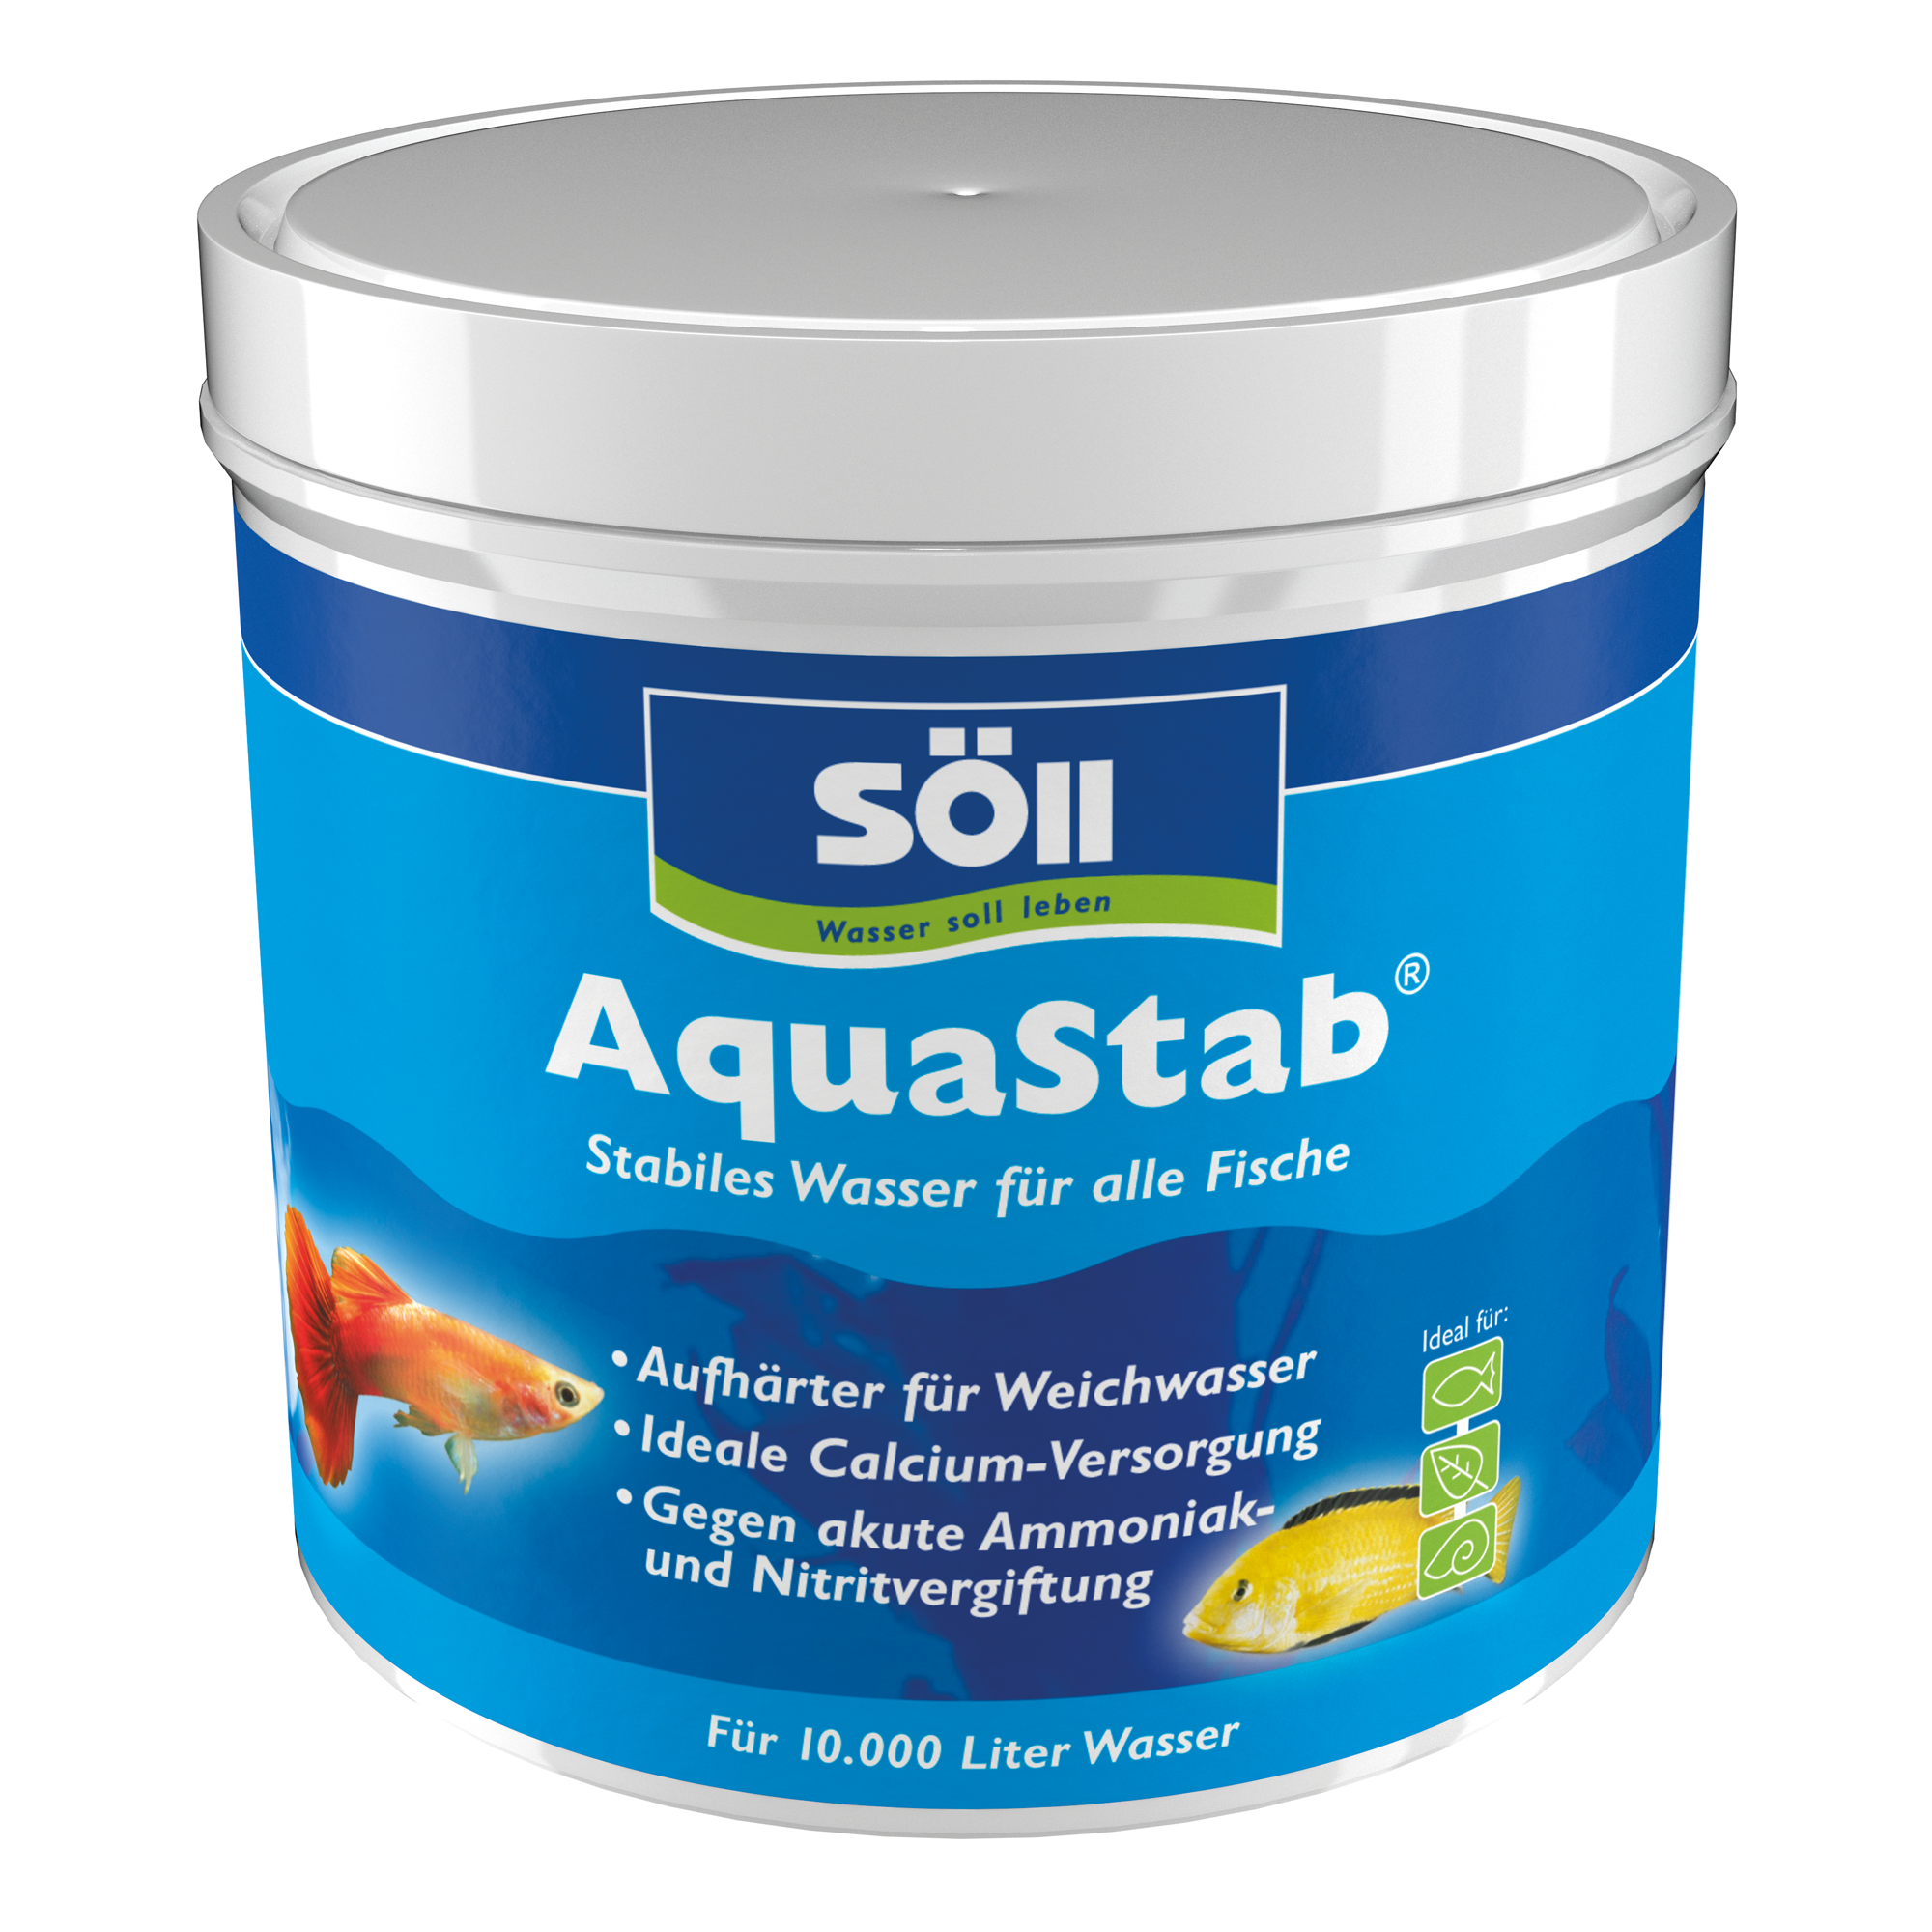 AquaStab 500 g + product picture